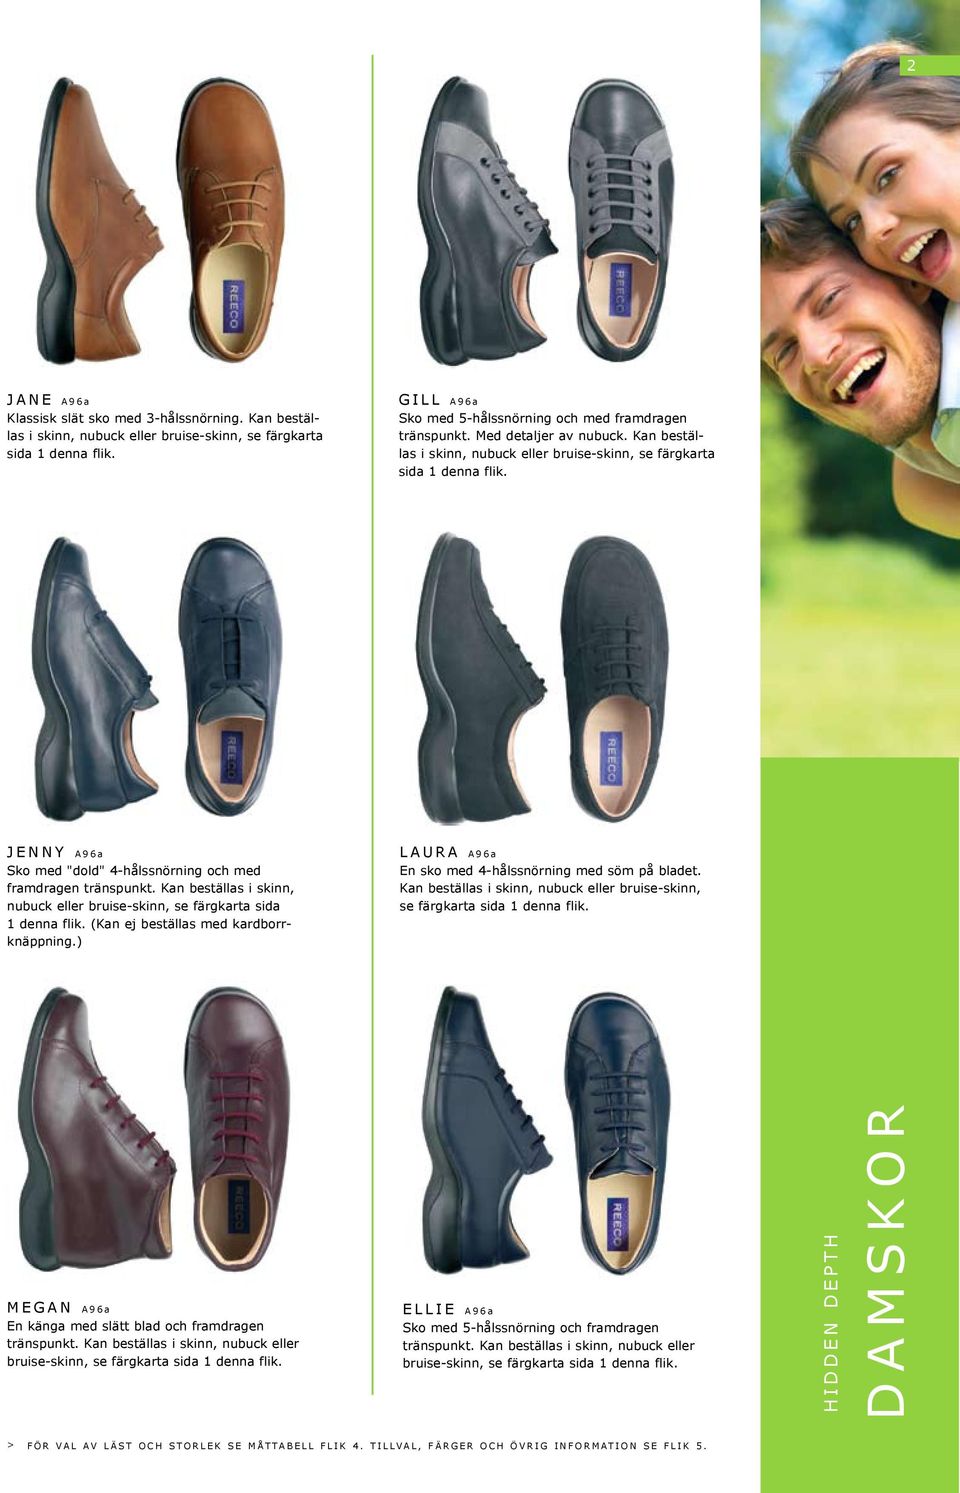 Kan beställas i skinn, nubuck eller bruise-skinn, se färgkarta sida 1 denna flik. (Kan ej beställas med kardborrknäppning.) LAURA A96a En sko med 4-hålssnörning med söm på bladet.